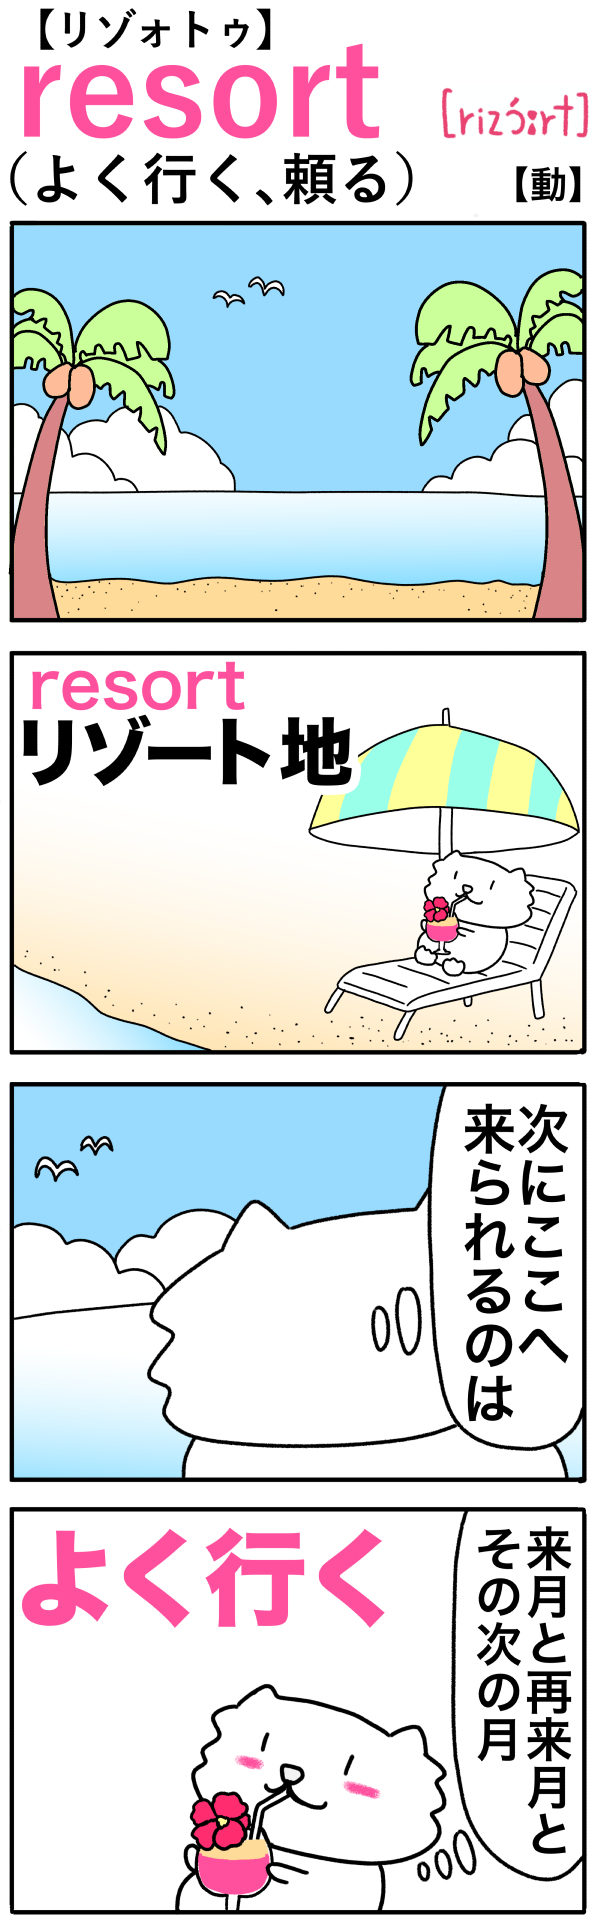 resort（よく行く、頼る）の語呂合わせ英単語